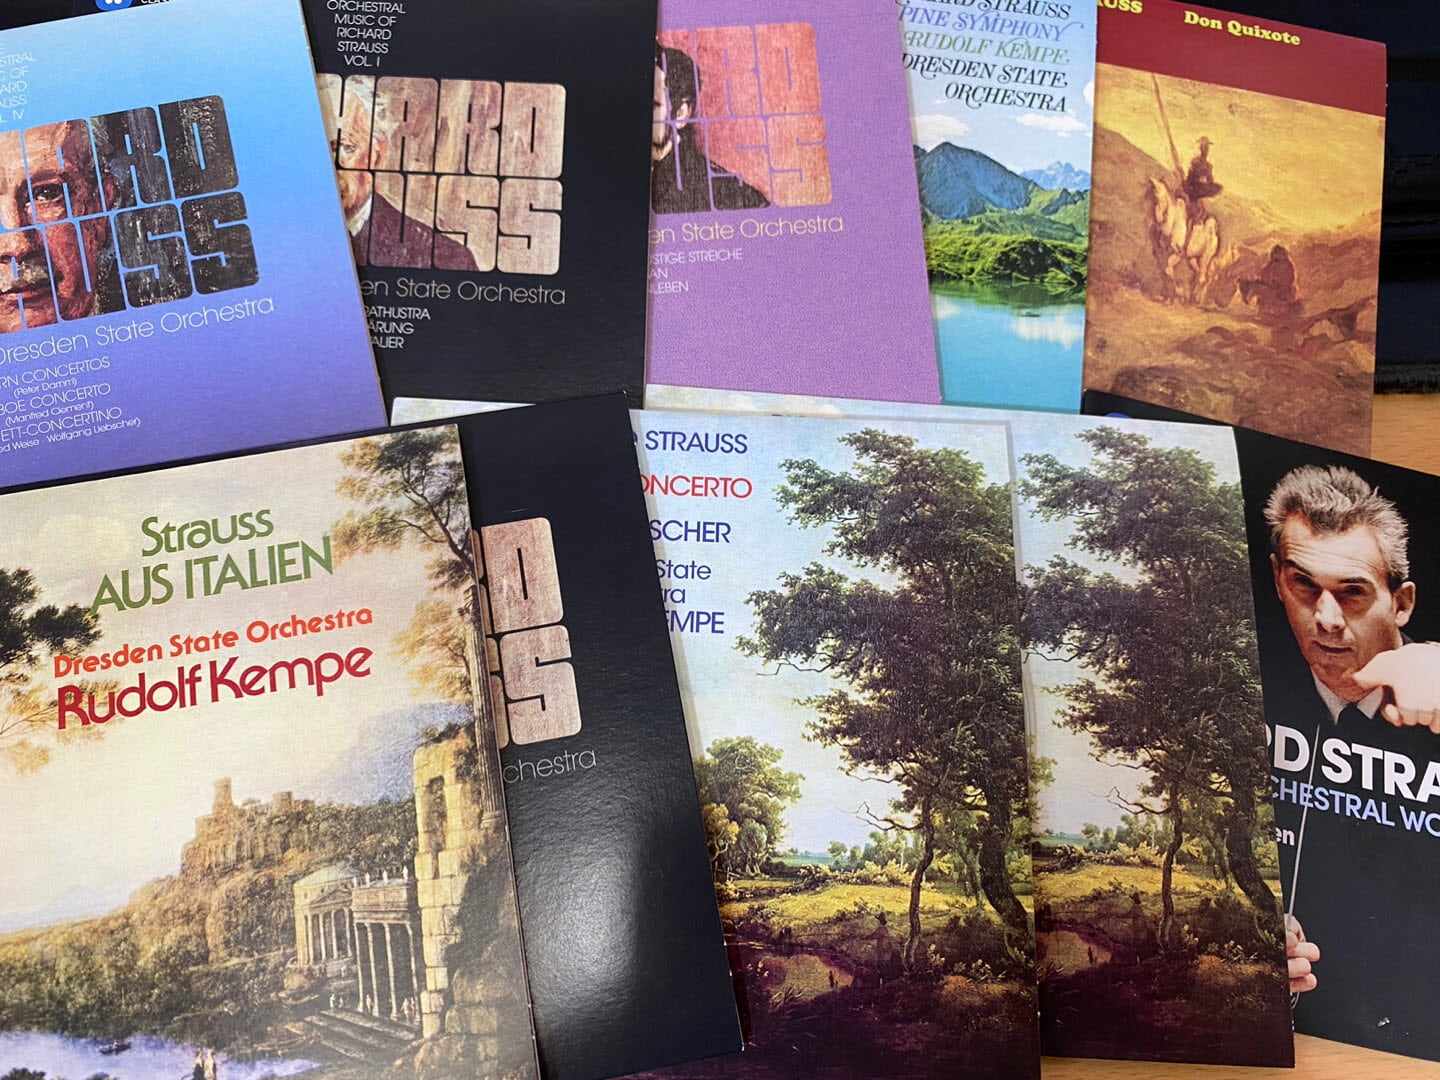 루돌프 켐페 - Rudolf Kempe - Richard Strauss Complete Orchestral Works 9Cds [박스] [E.U발매]